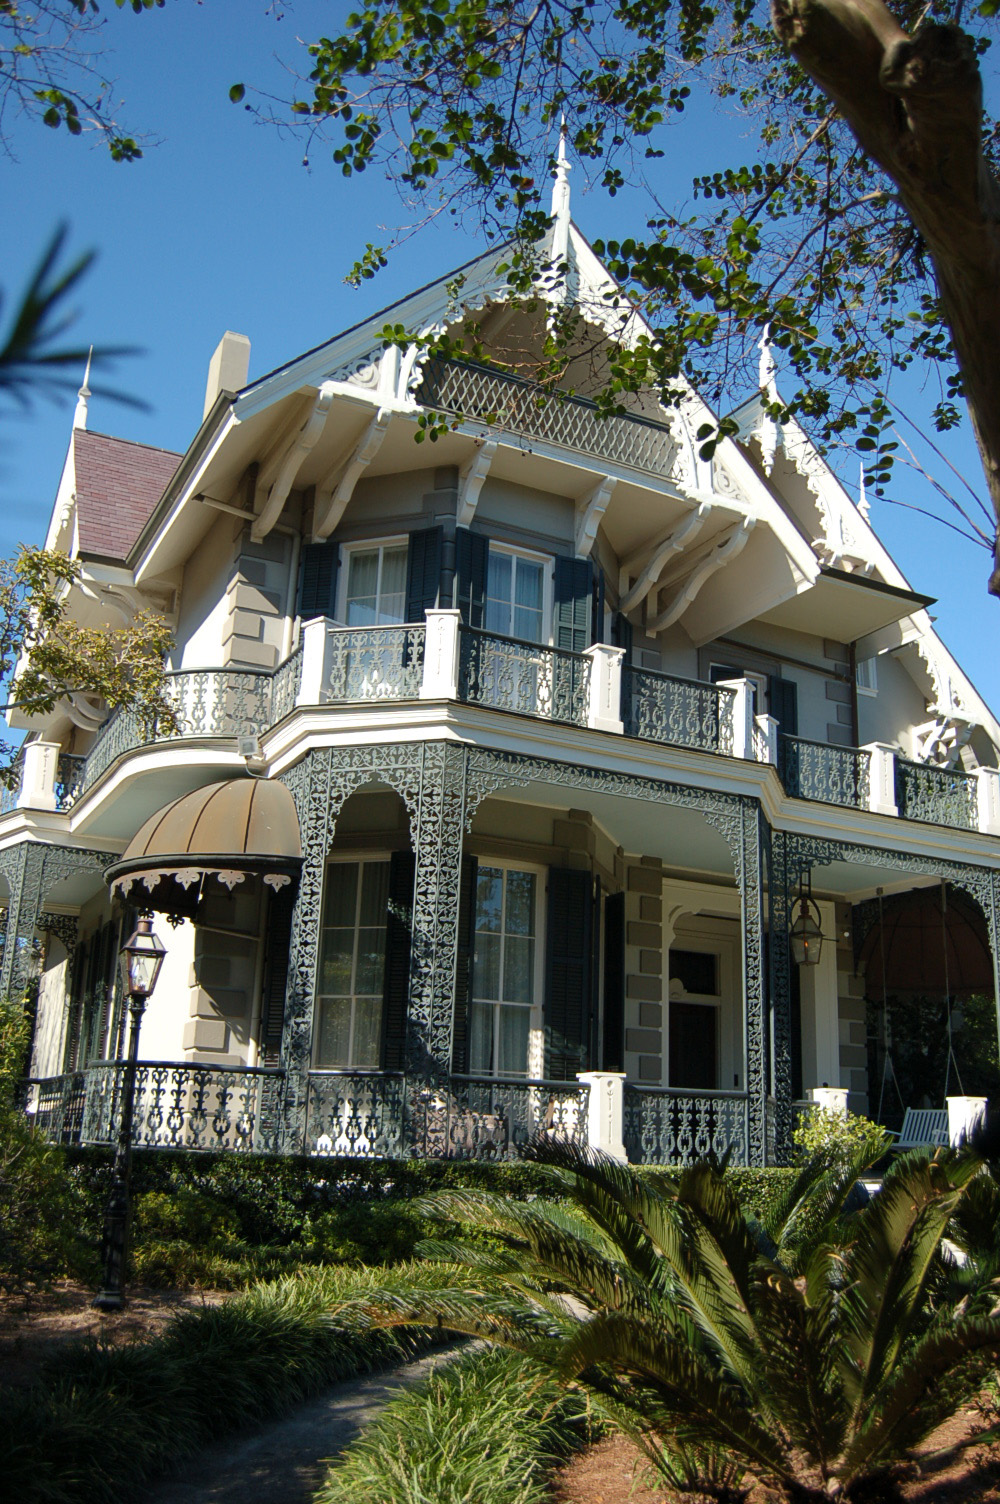 Garden District home in New Orleans - Maiden Voyage